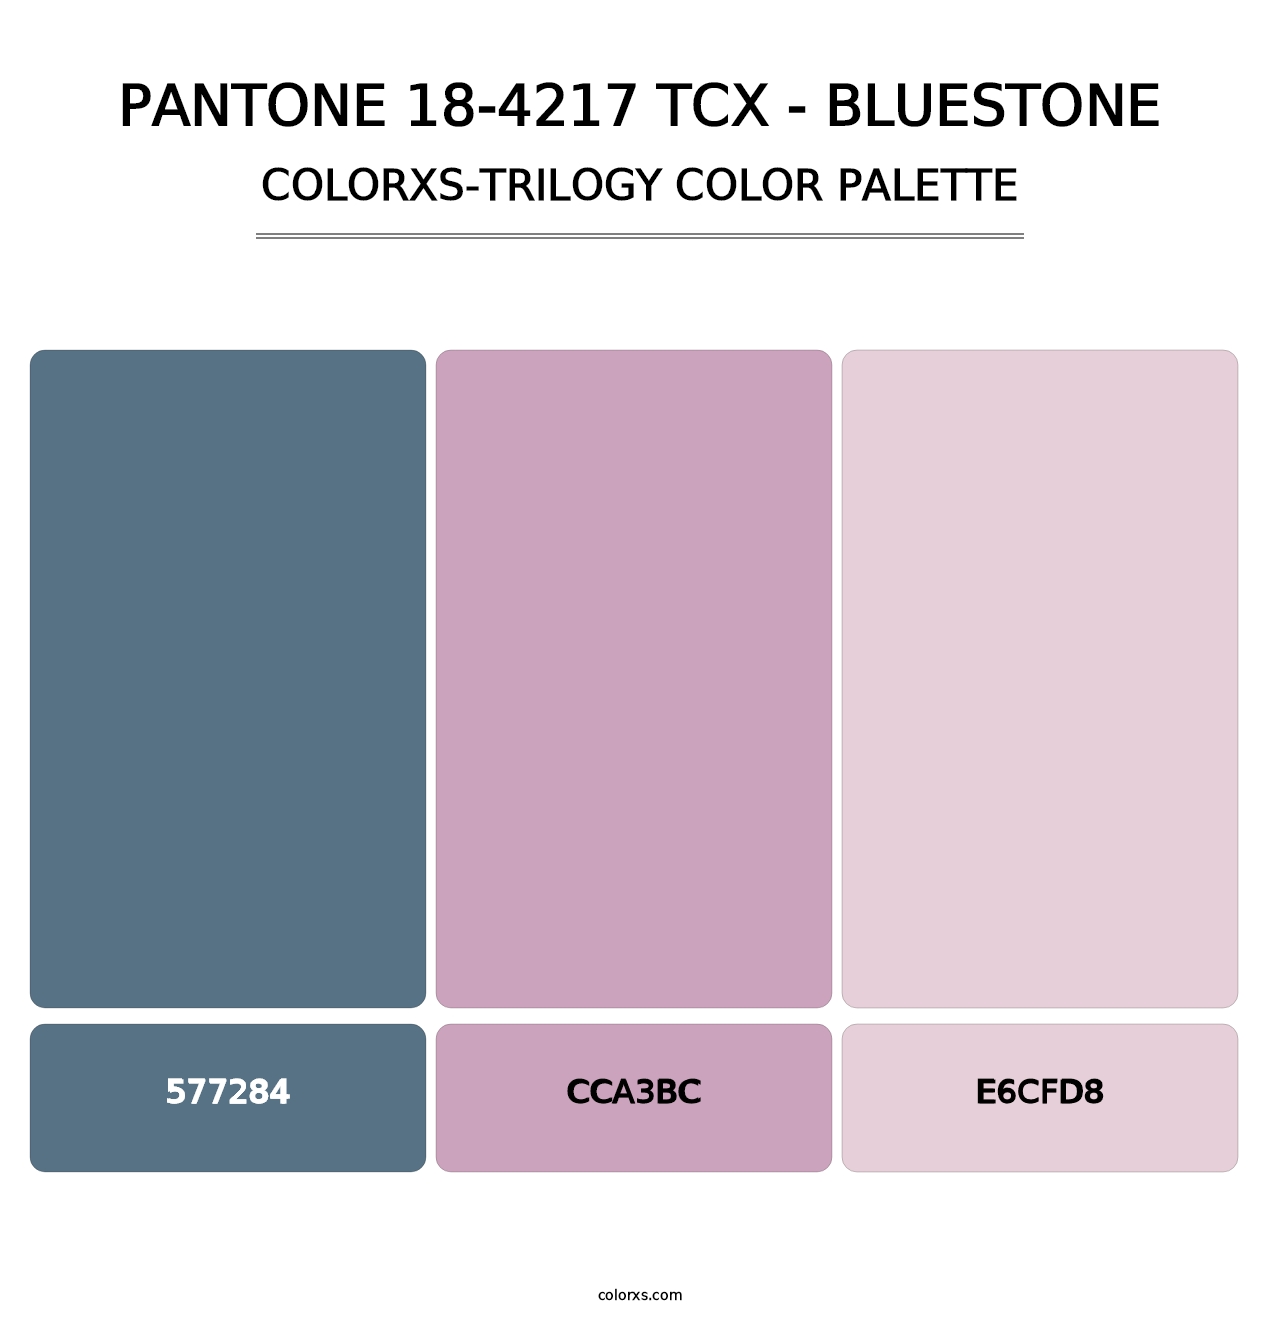 PANTONE 18-4217 TCX - Bluestone - Colorxs Trilogy Palette